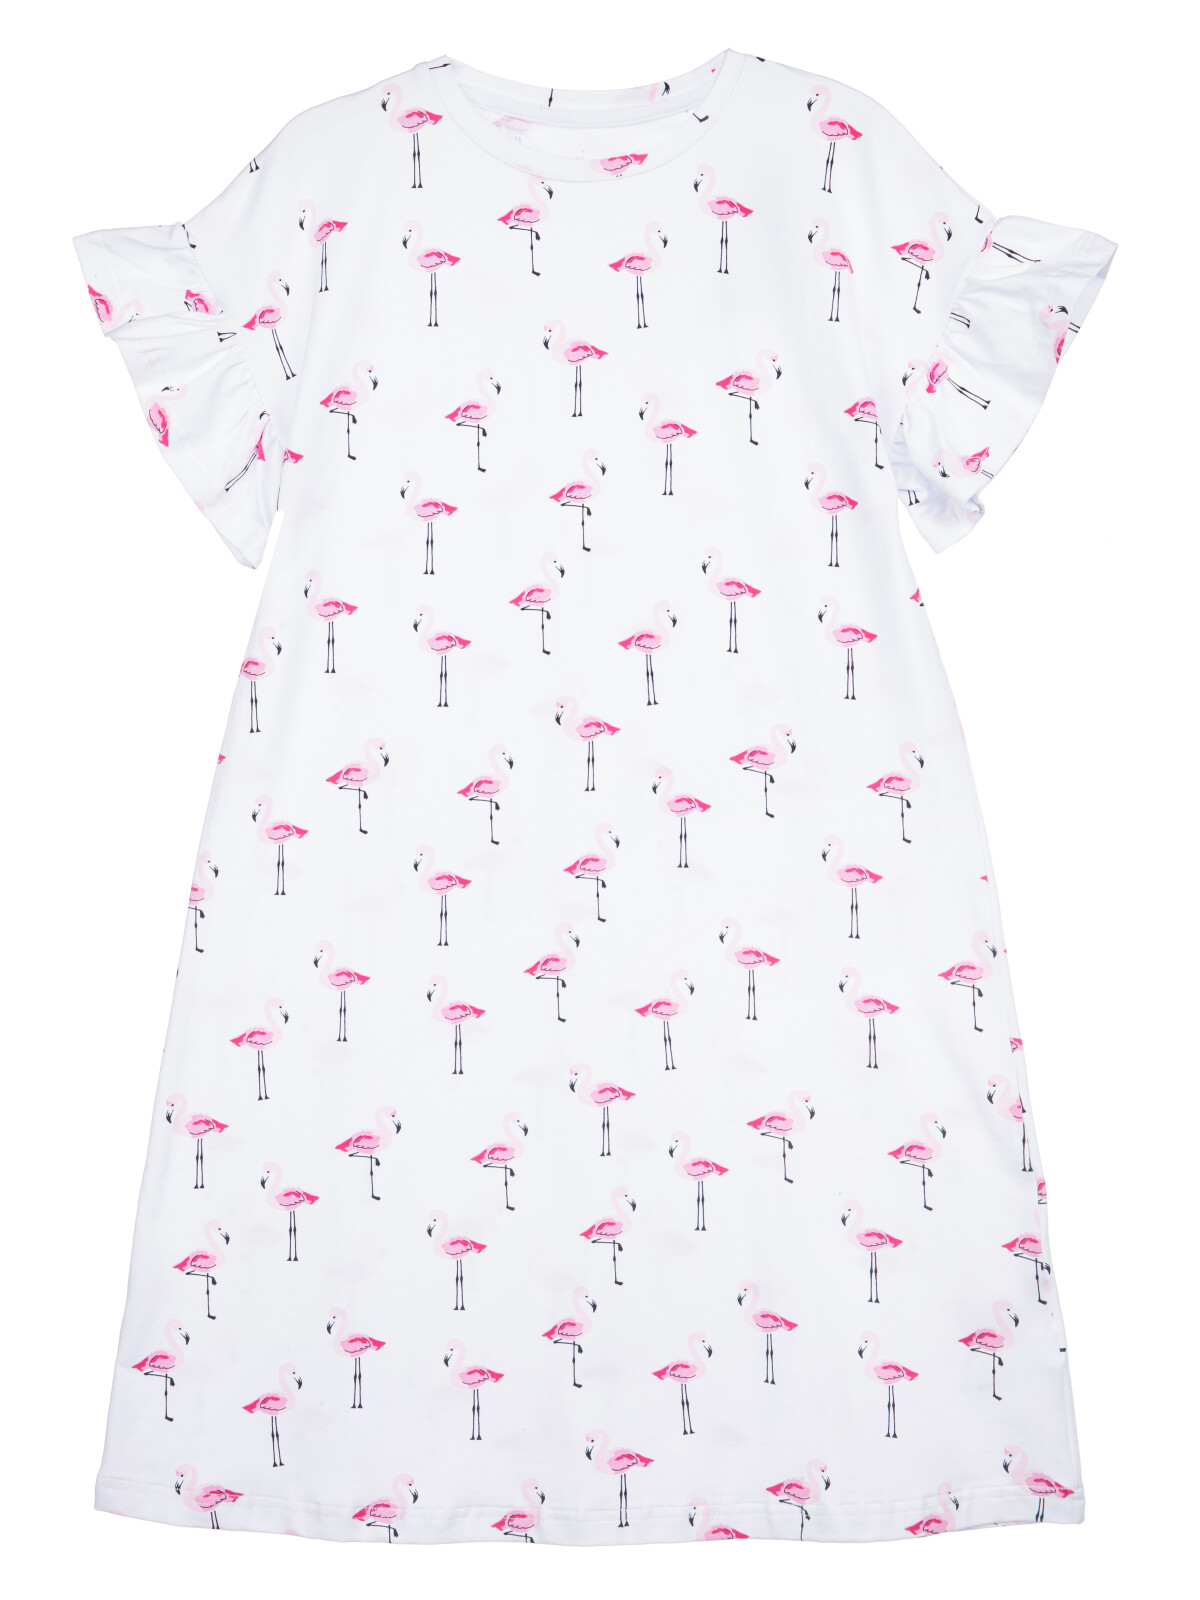 Сорочка ночная трикотажная для девочек PlayToday, белый,светло-розовый, 152